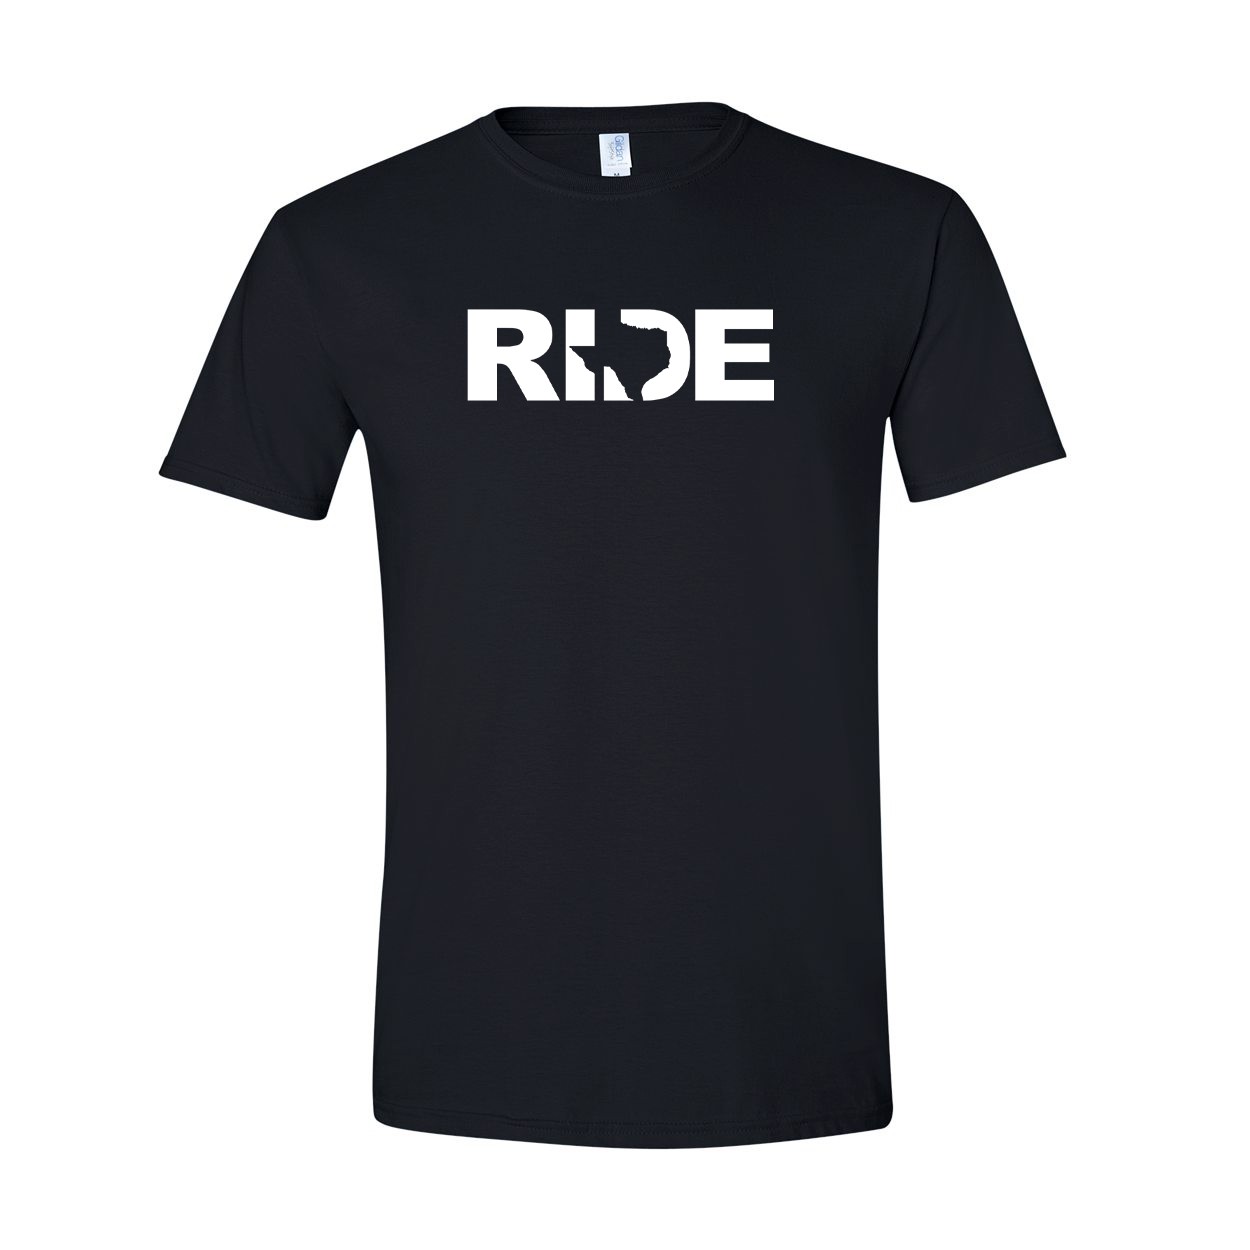 Ride Texas Classic T-Shirt Black (White Logo)